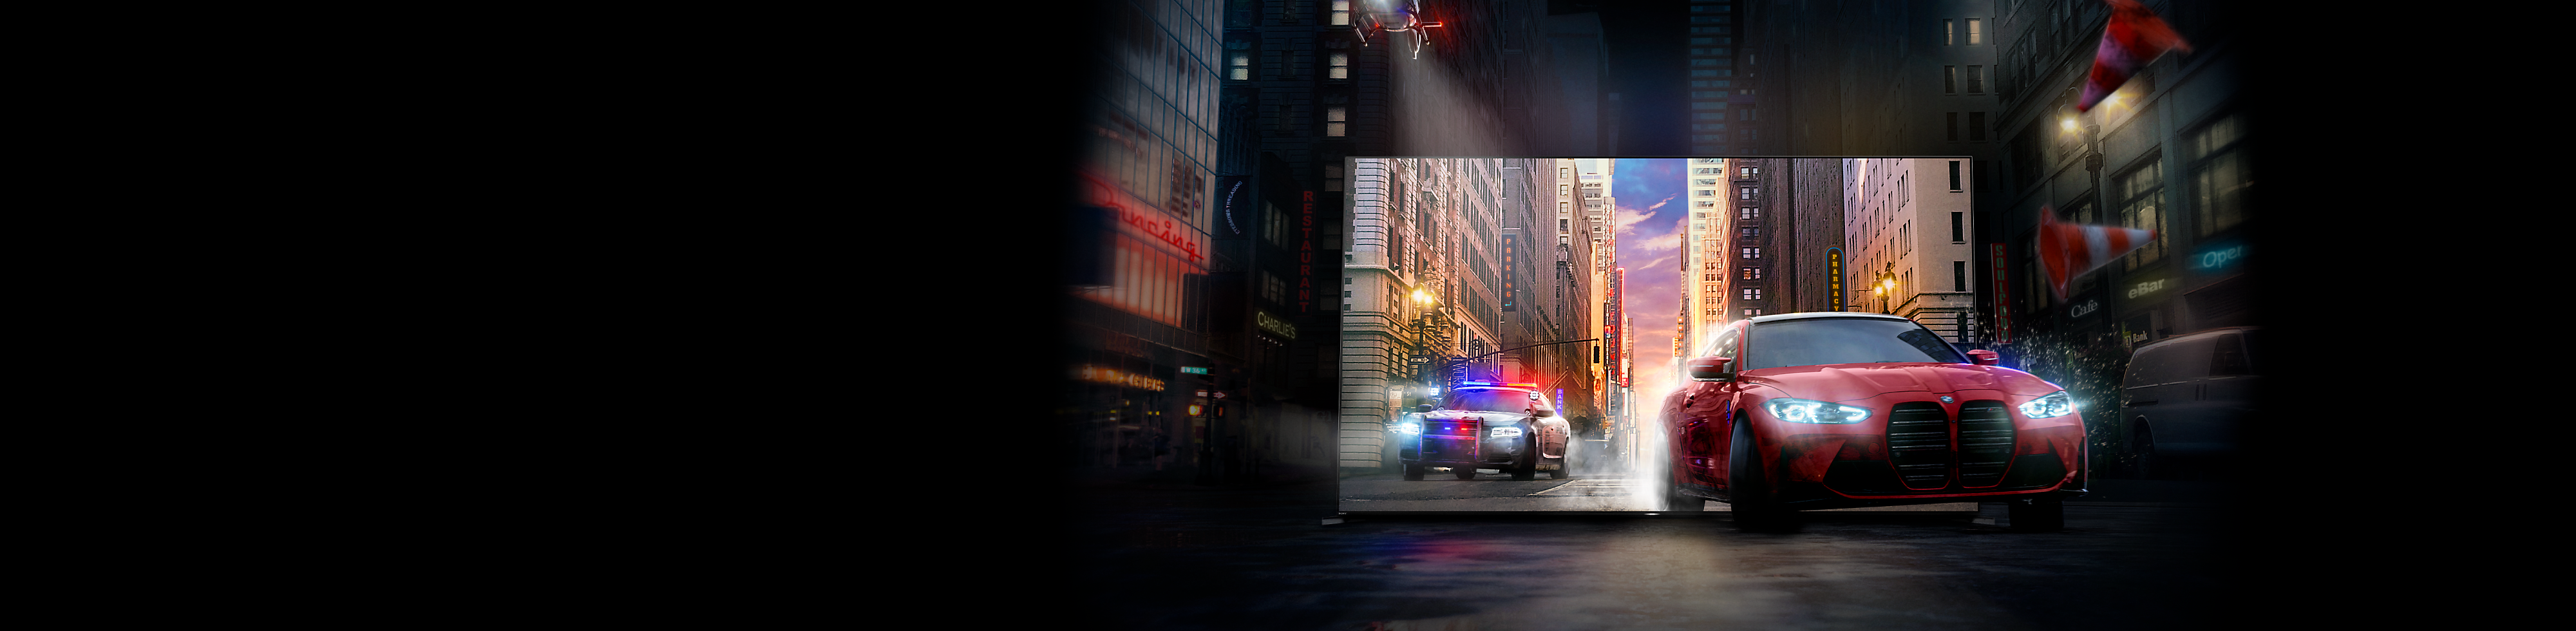 Policijos persekiojama raudona mašina iš BRAVIA TV ekrano išvažiuoja į miesto gatvę